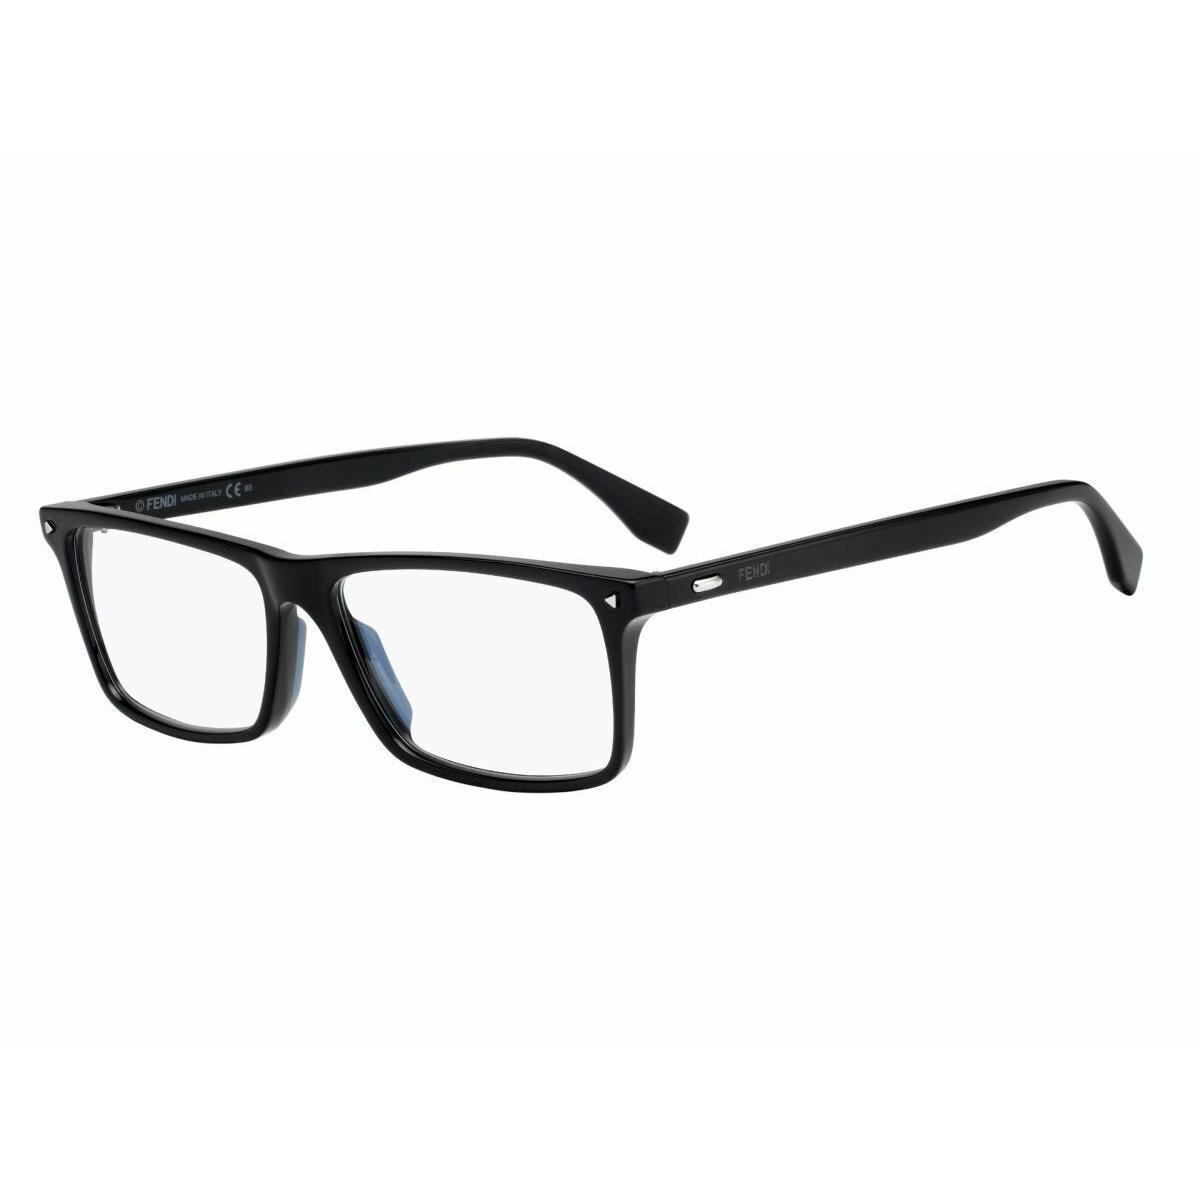 Fendi FF M0005 Eyeglasses 807 55-15-145 Shiny Black Square Eyeglasses